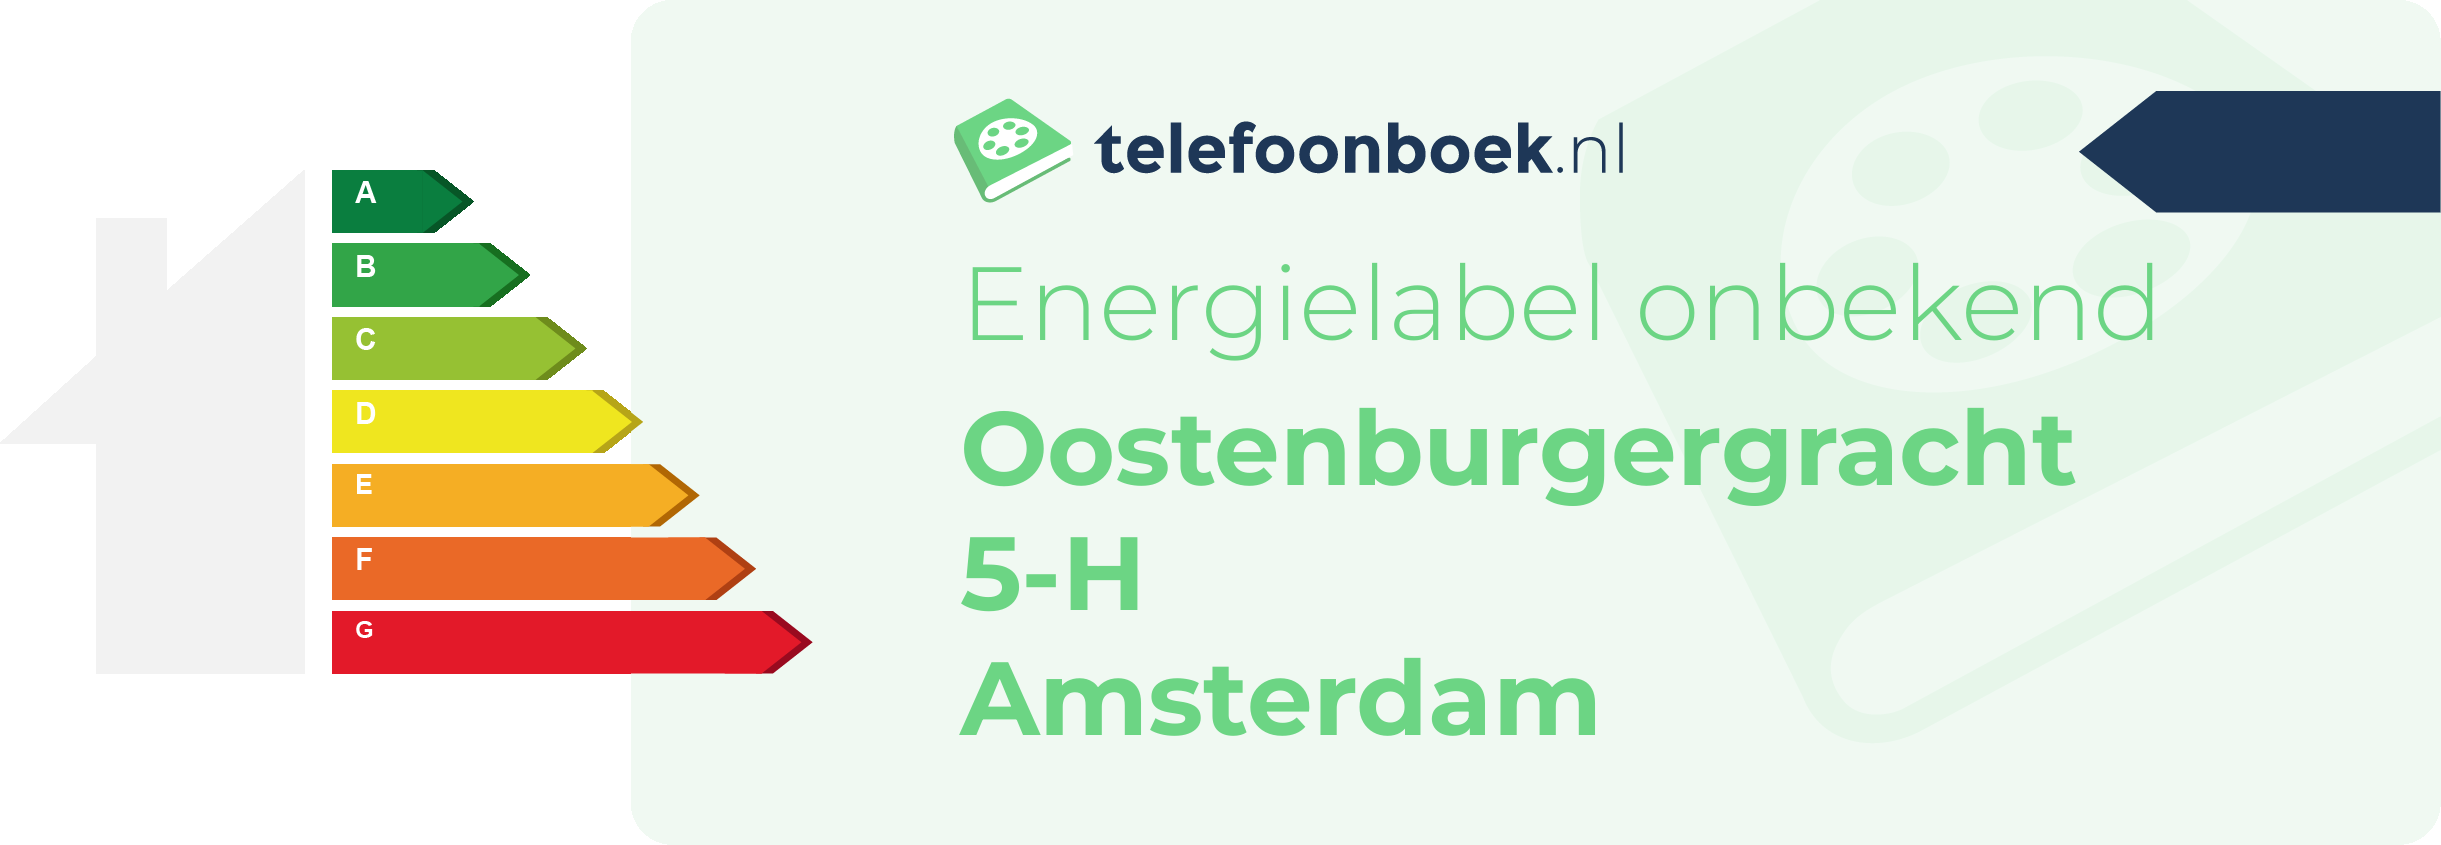 Energielabel Oostenburgergracht 5-H Amsterdam